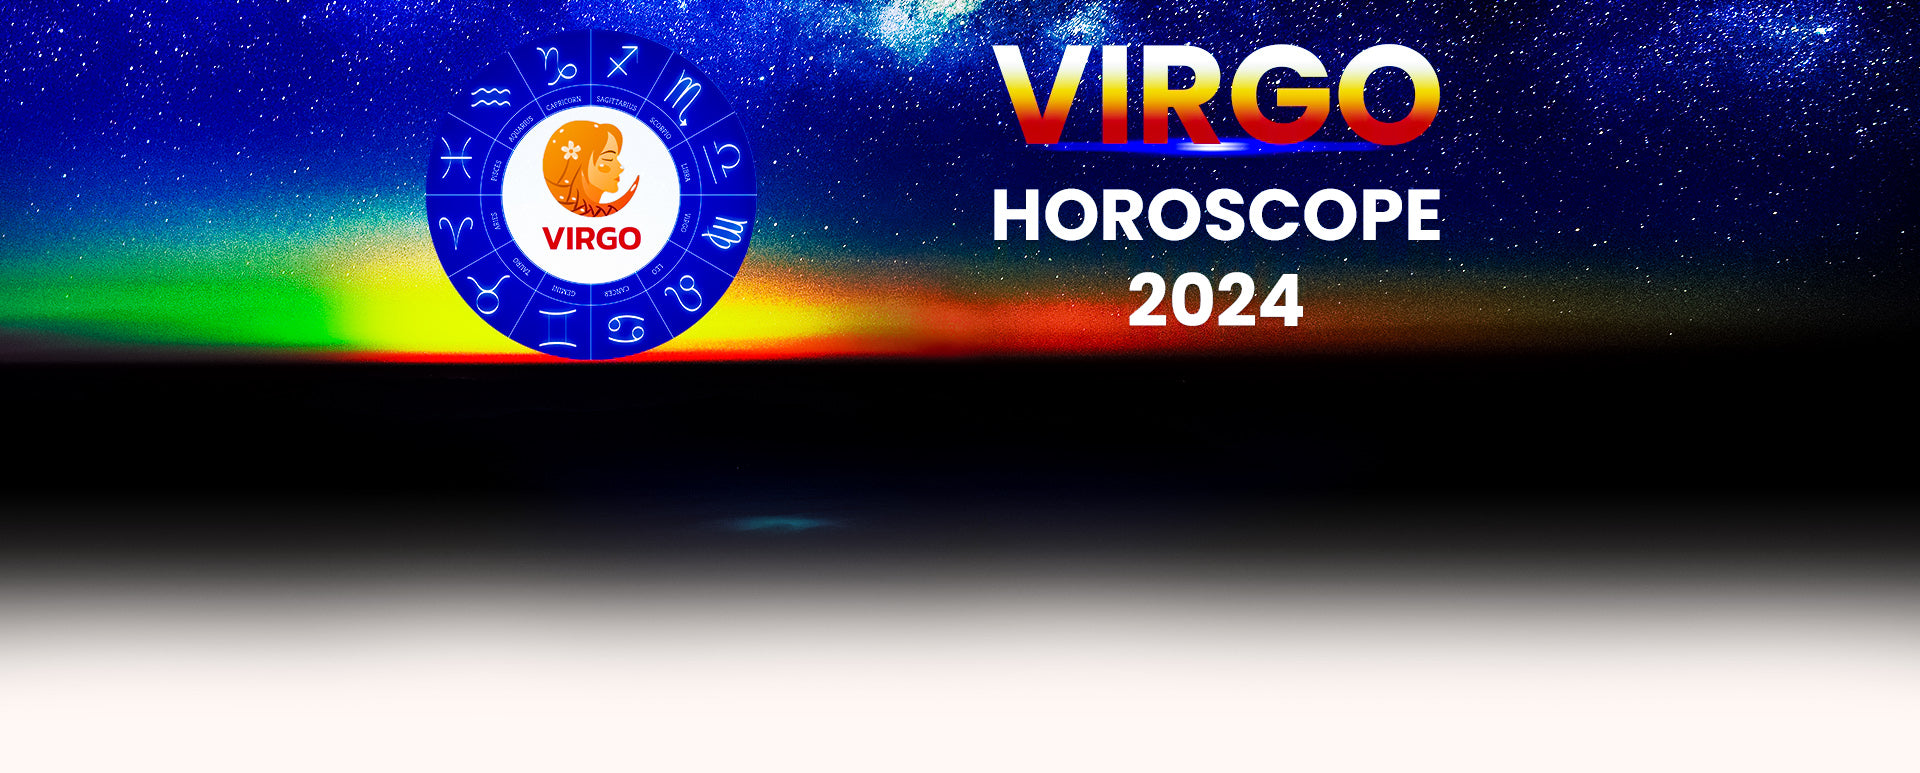 June Horoscope 2024 For Virgo Lotta Rhiamon